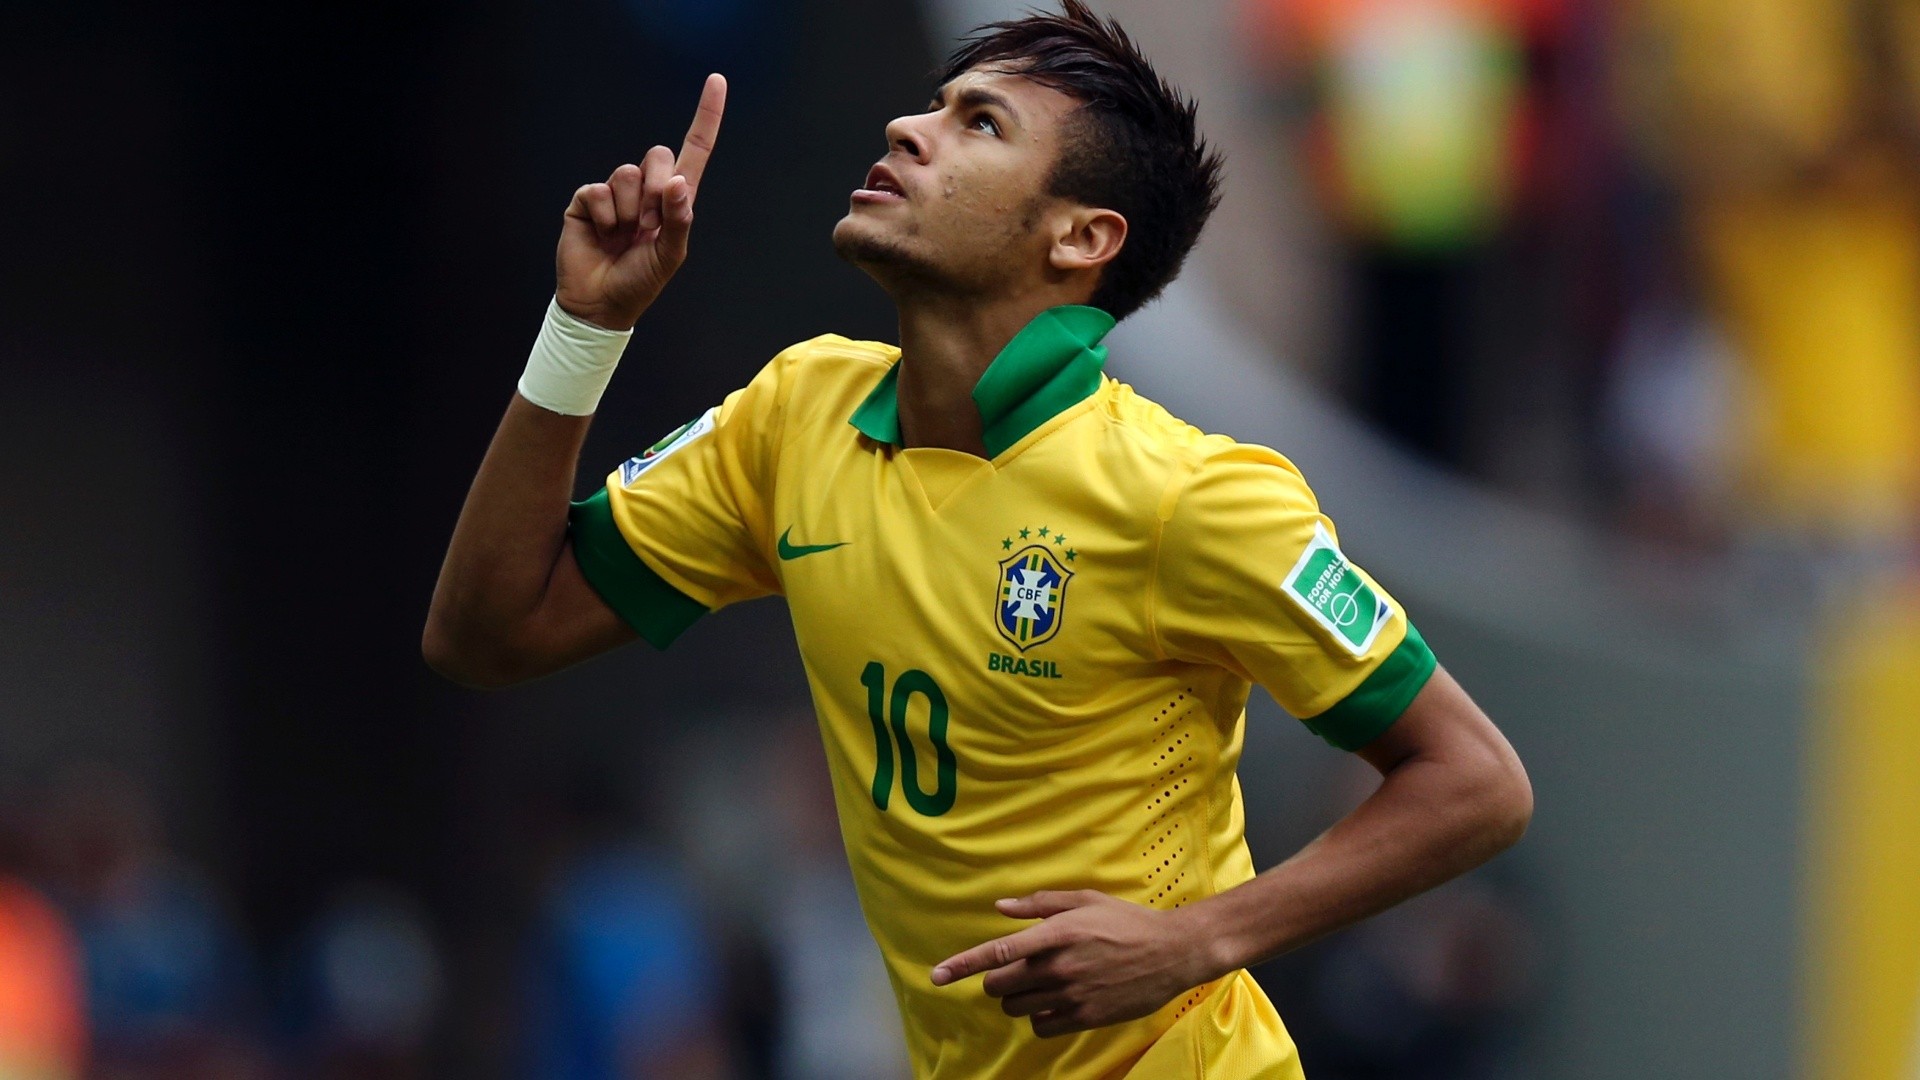 neymar wallpaper,player,football player,soccer player,sports equipment,team sport